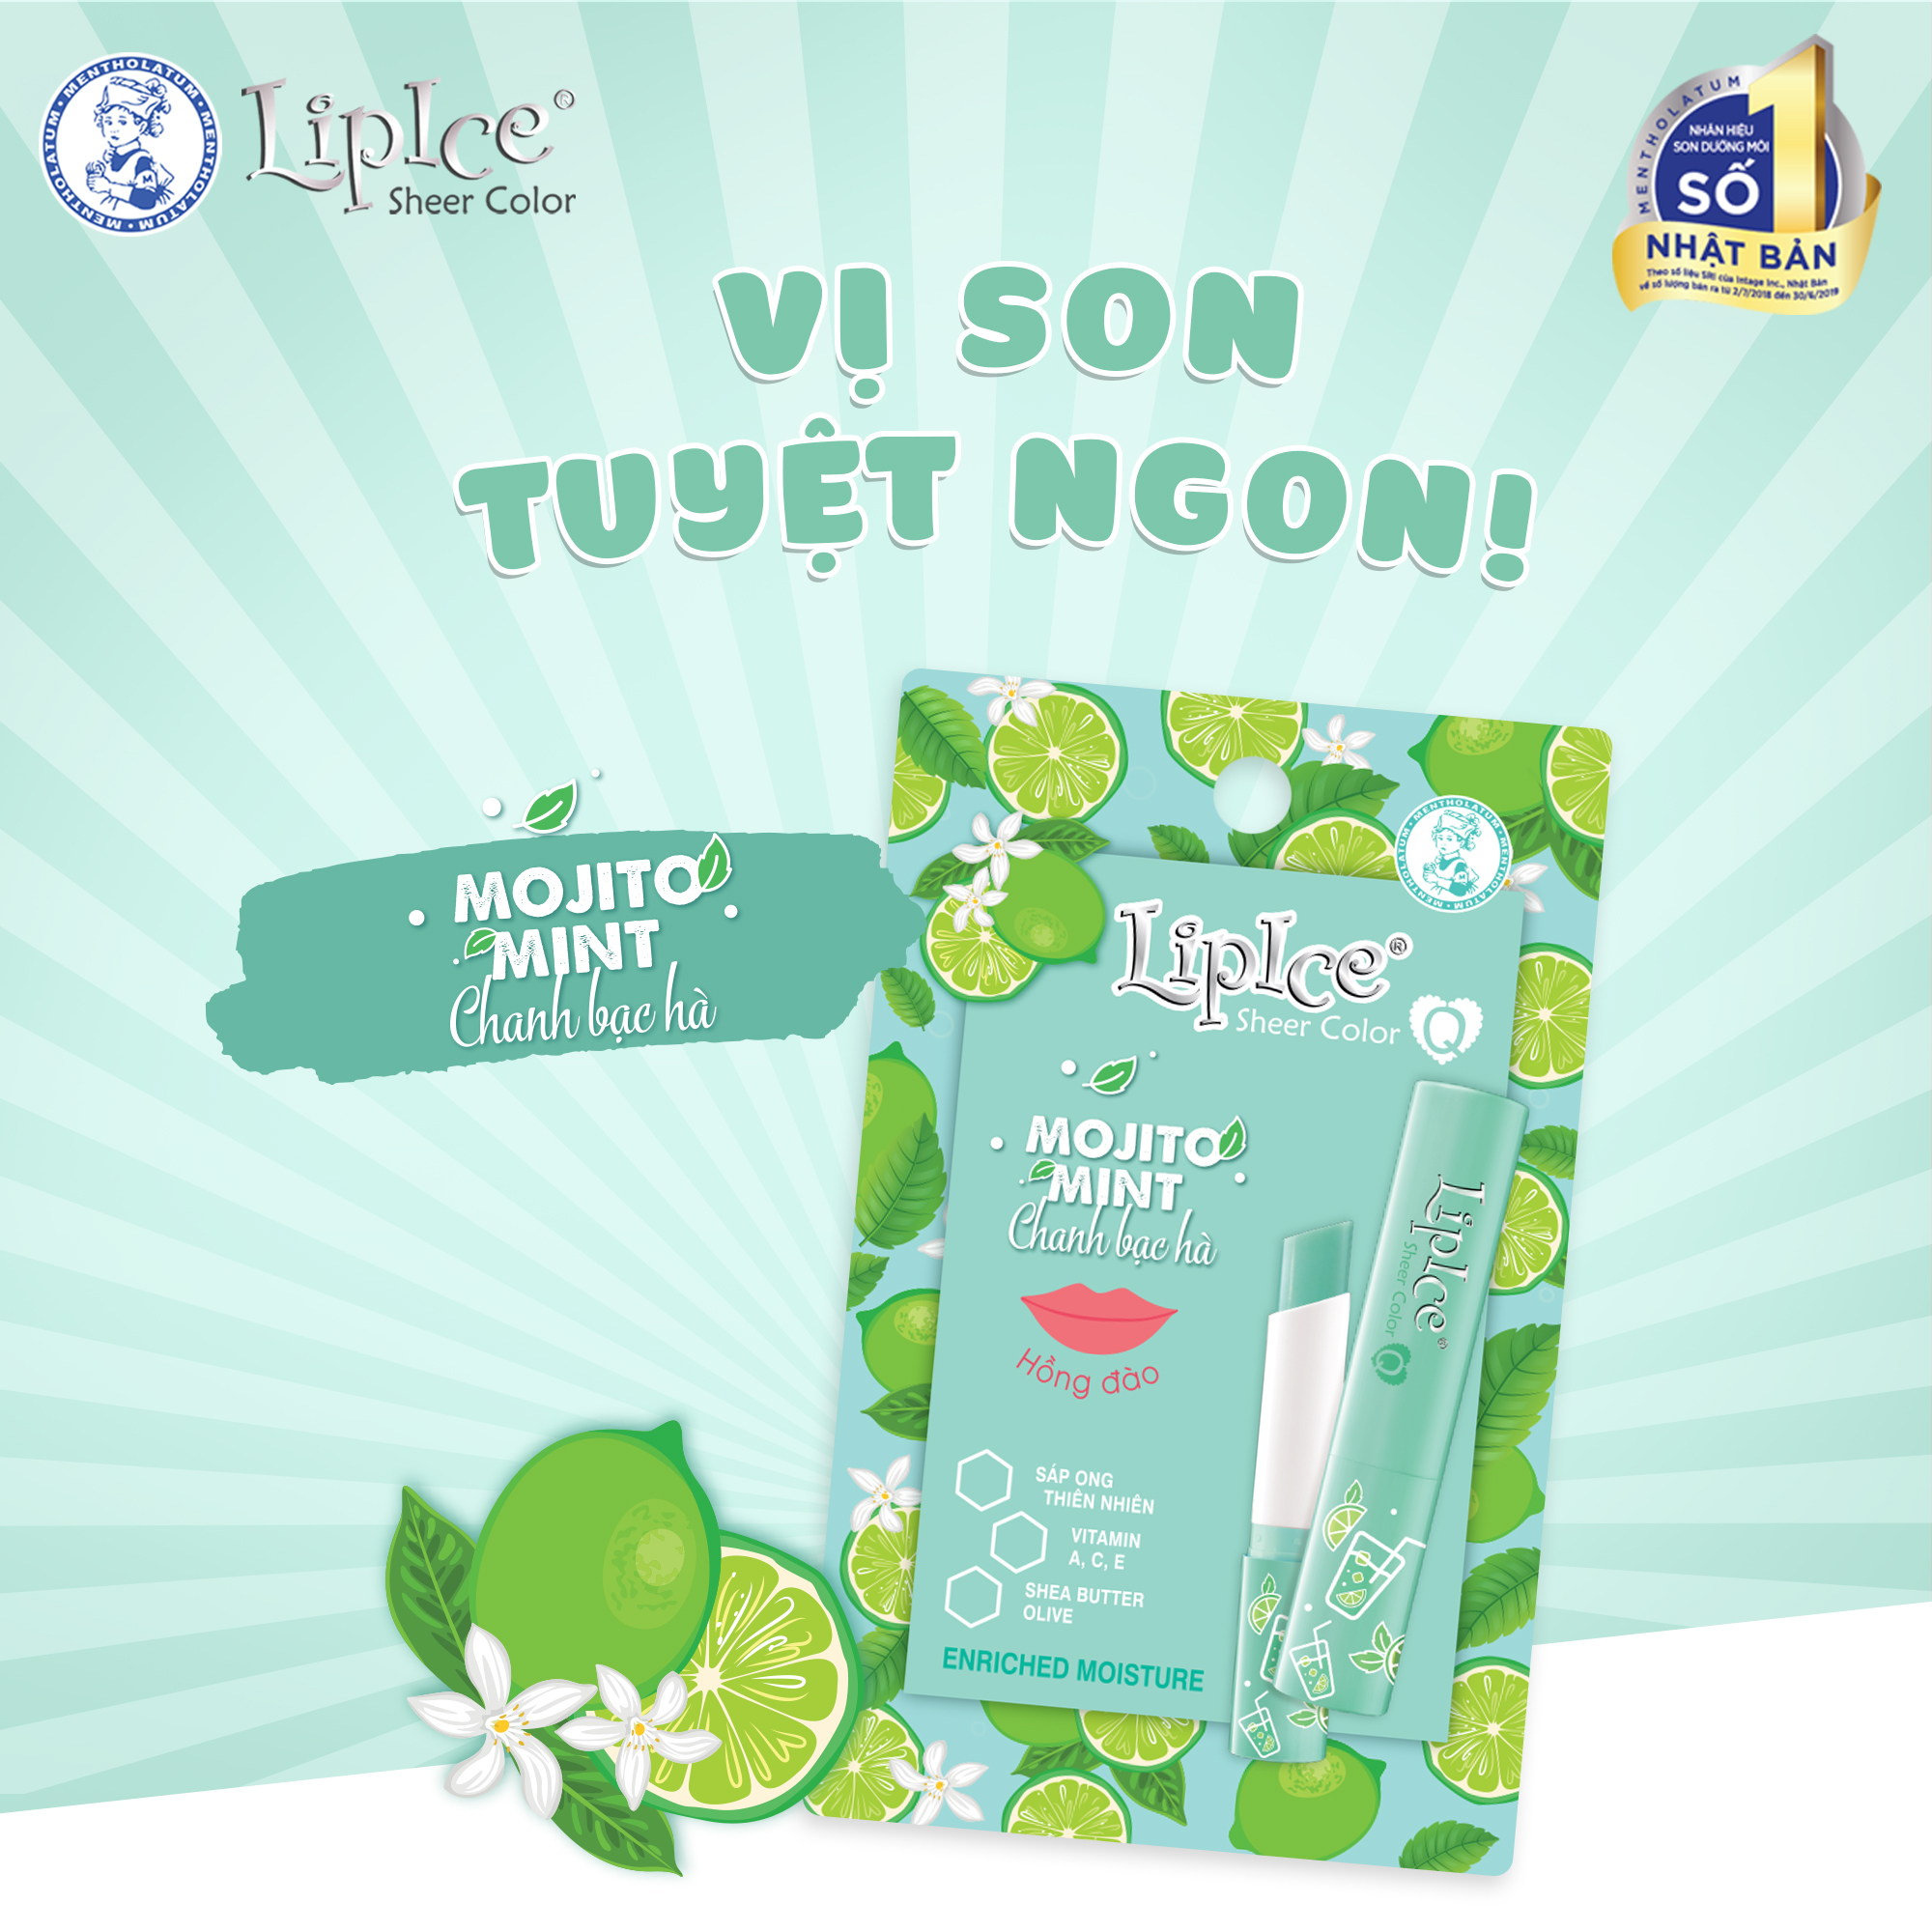 Son dưỡng Lipice Sheer Color Q Mojito Mint 2.4g (Hồng đào)